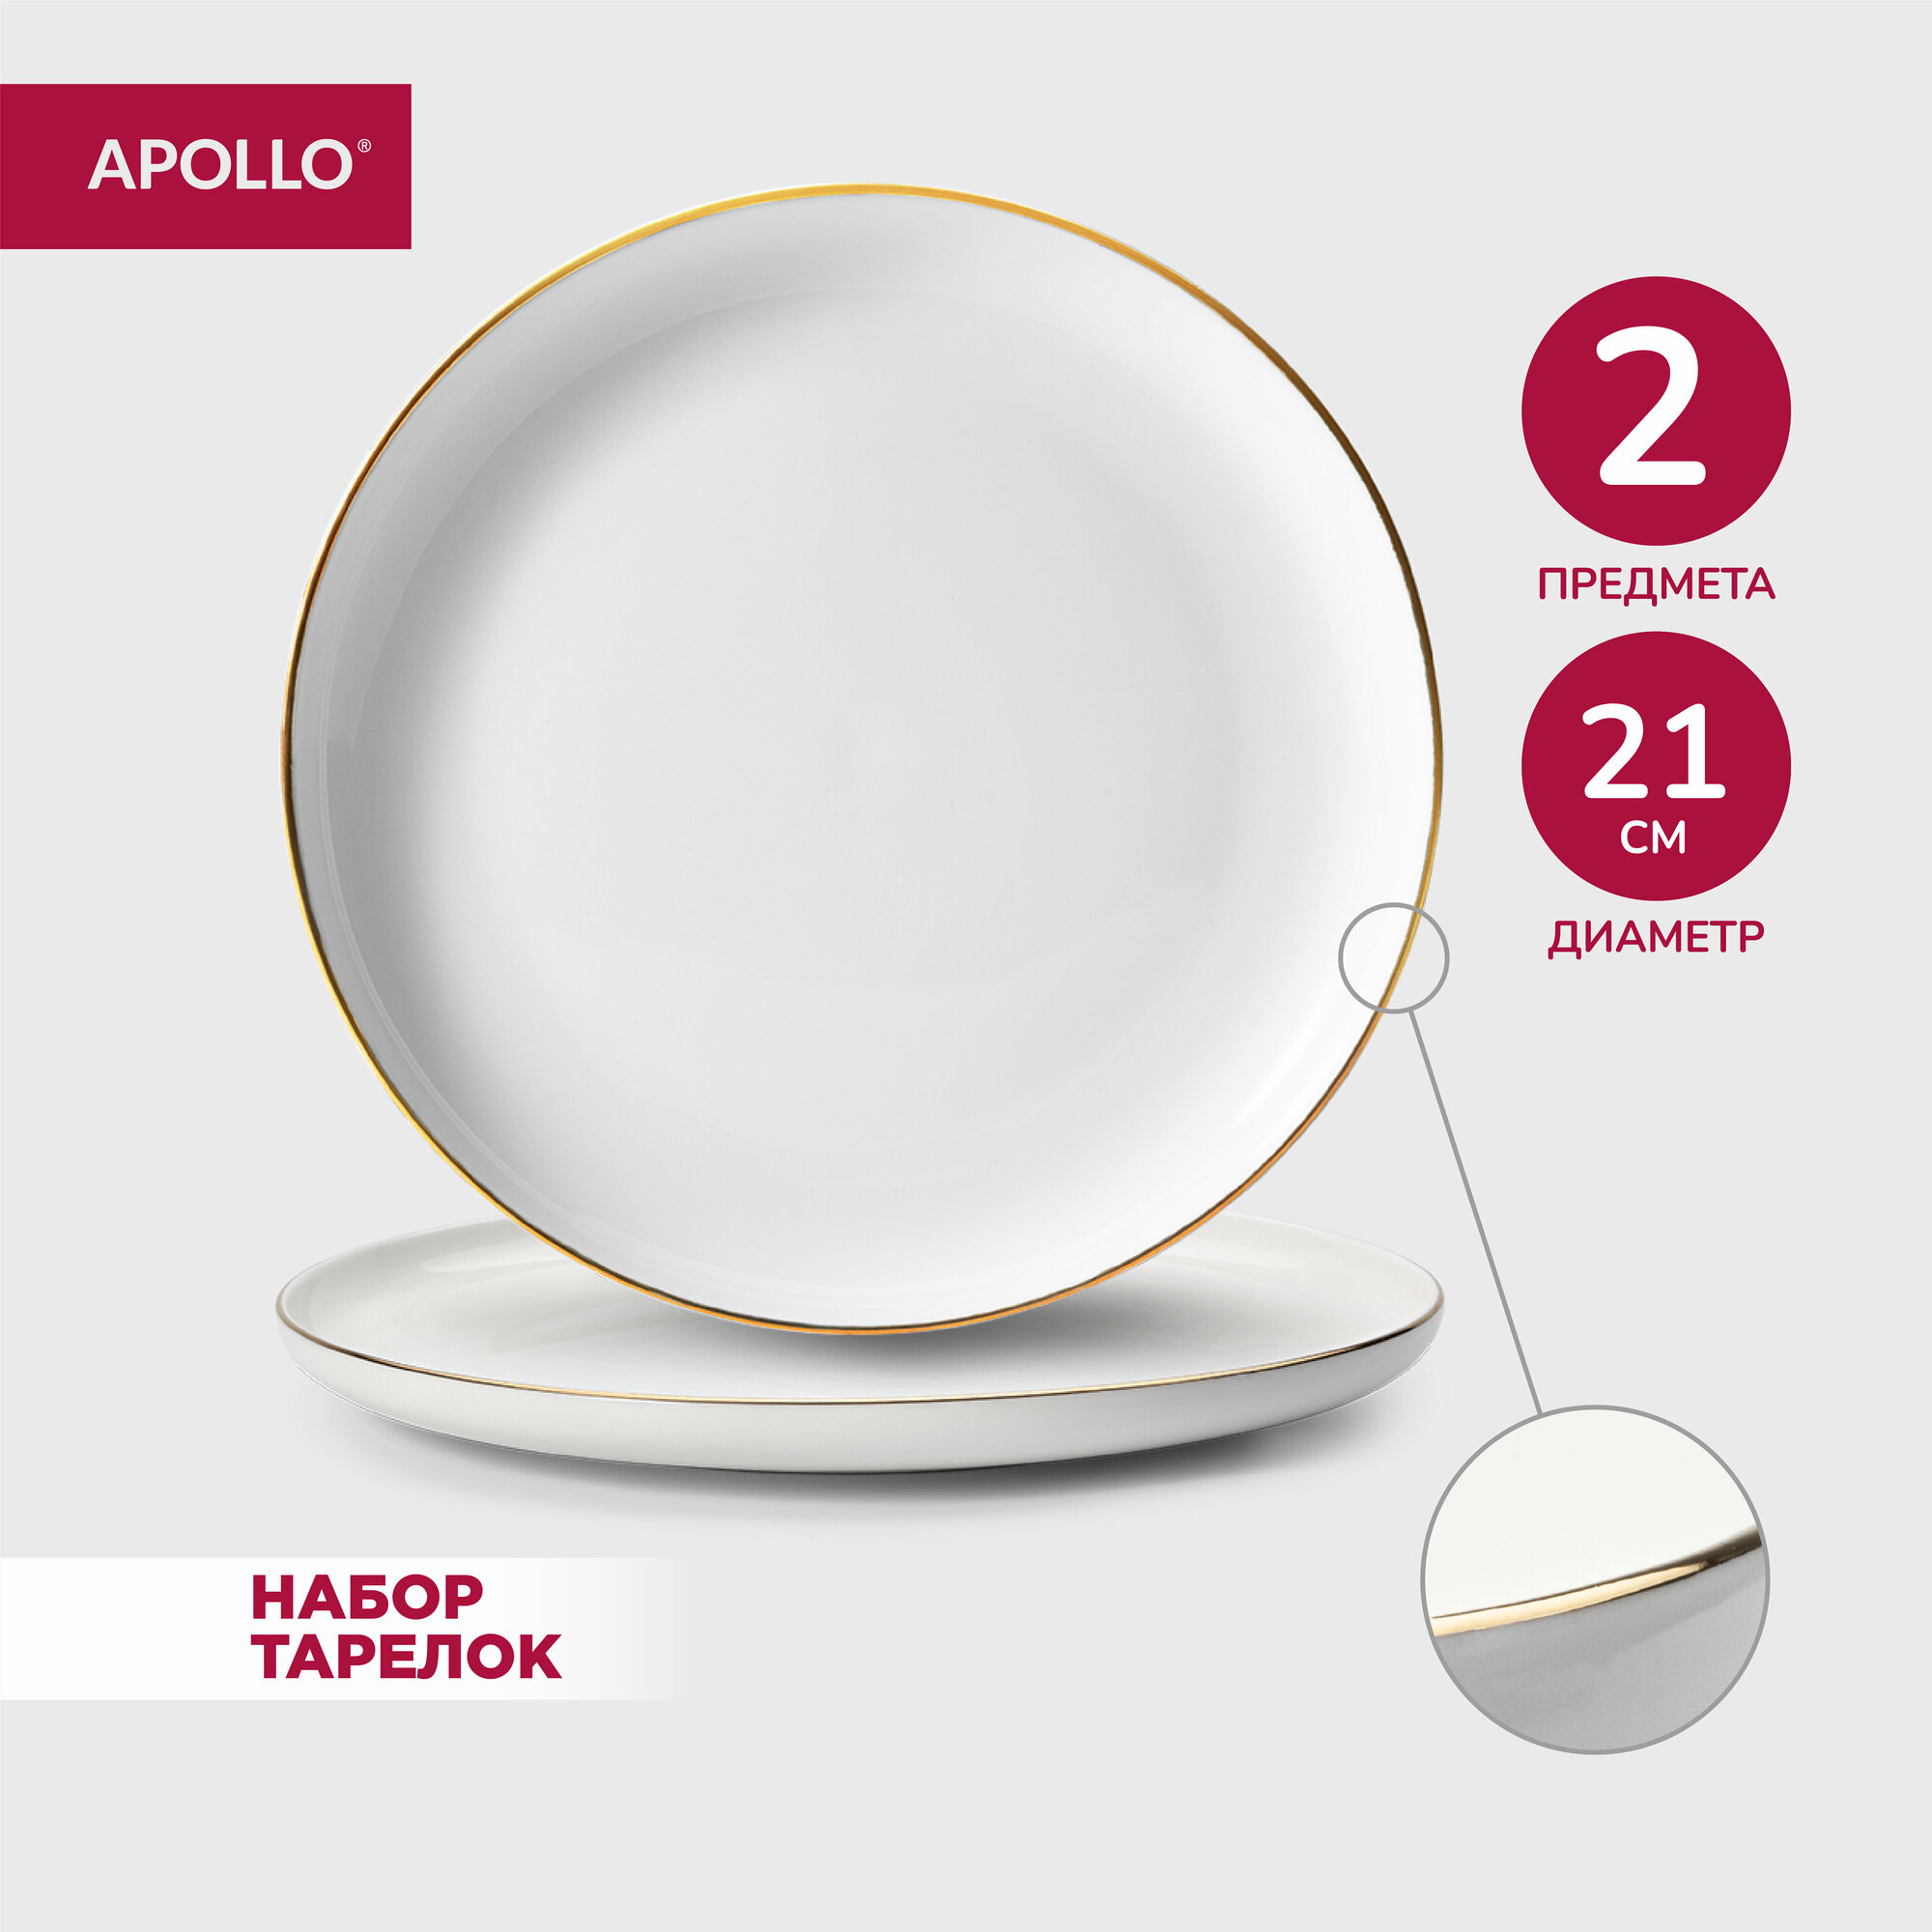 Тарелка фарфоровая обеденная, набор для сервировки стола APOLLO "Cintoro", 21 см, 2 предмета